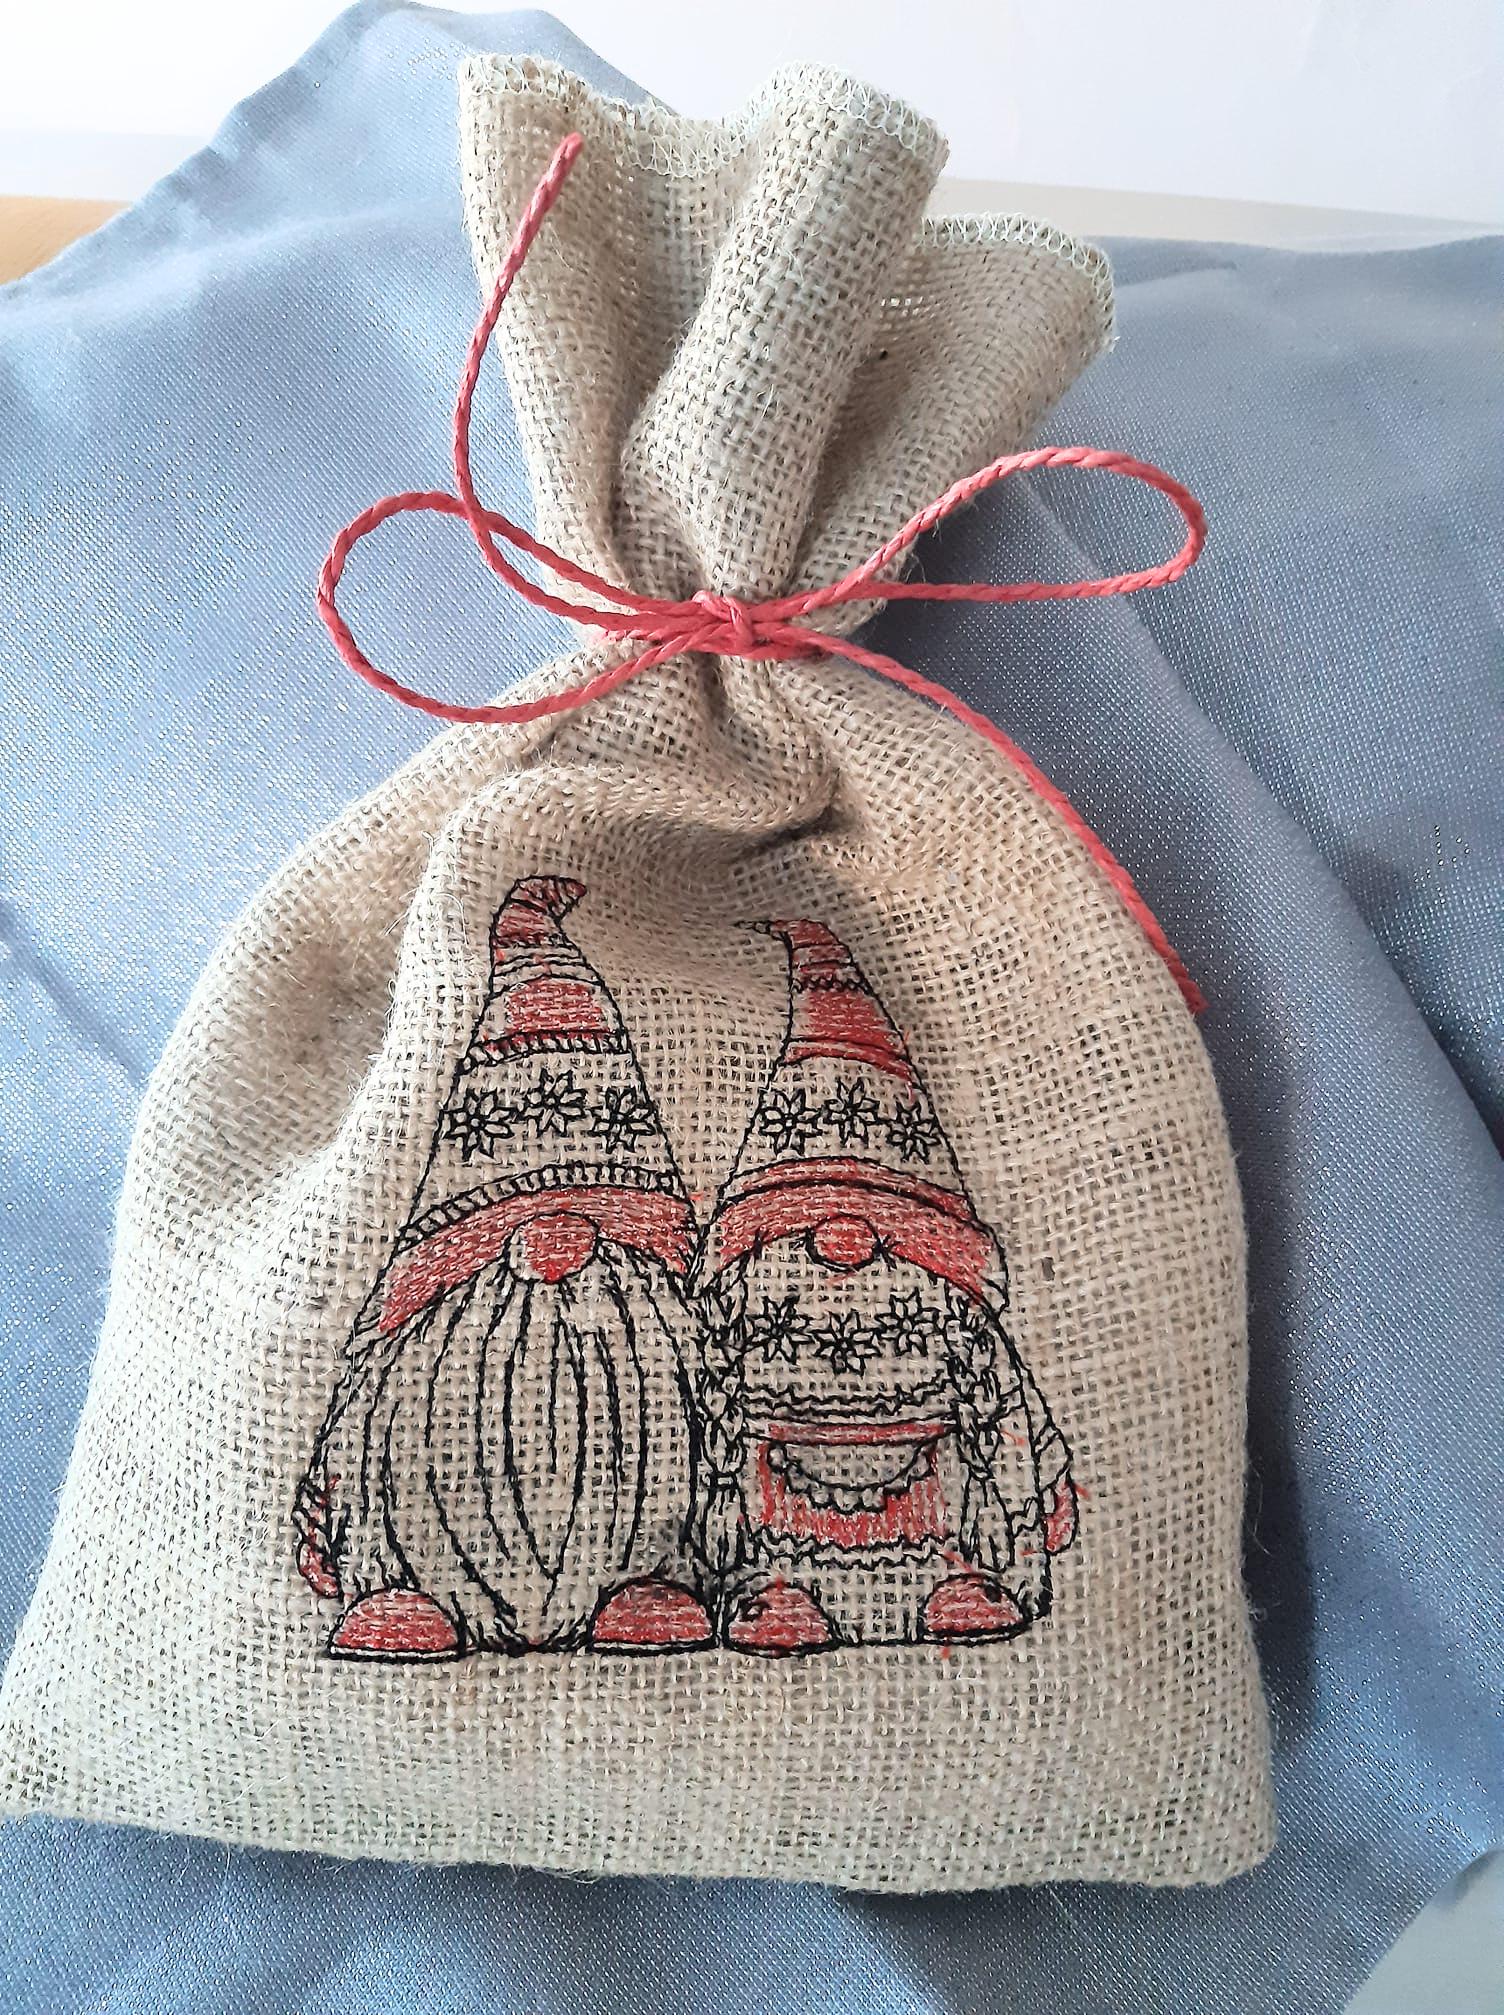 Embroidered_christmas_bag_for_gifts.jpg